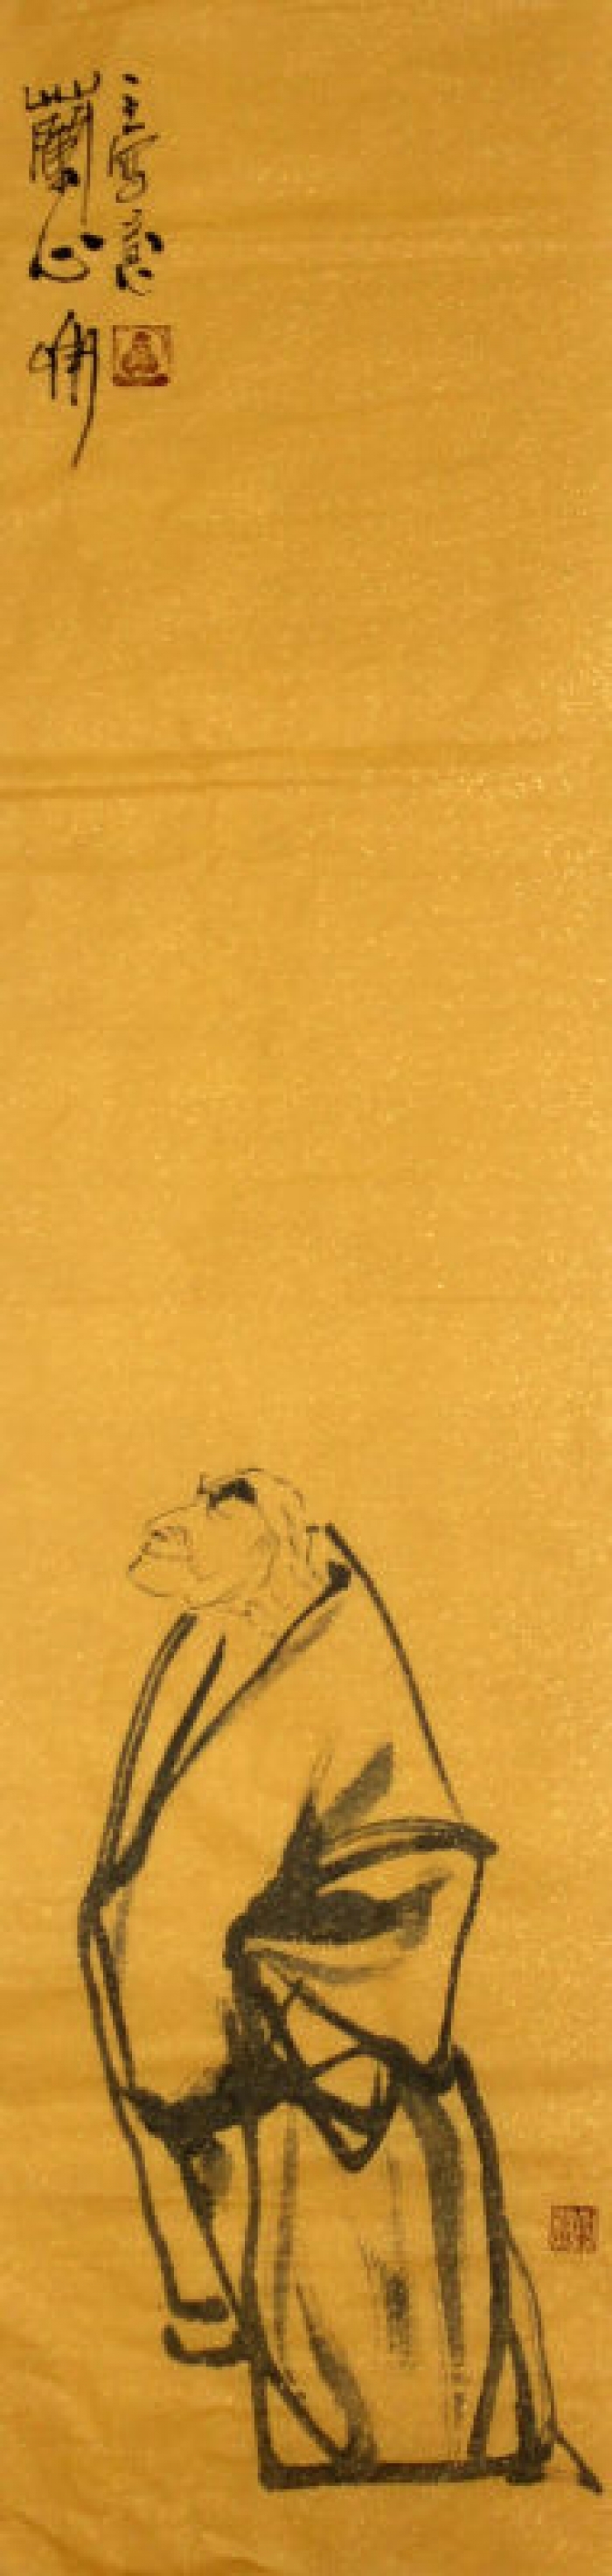 Lin Xinghu Chinesische Kunst - Die Serien von Malereien ohne Titel